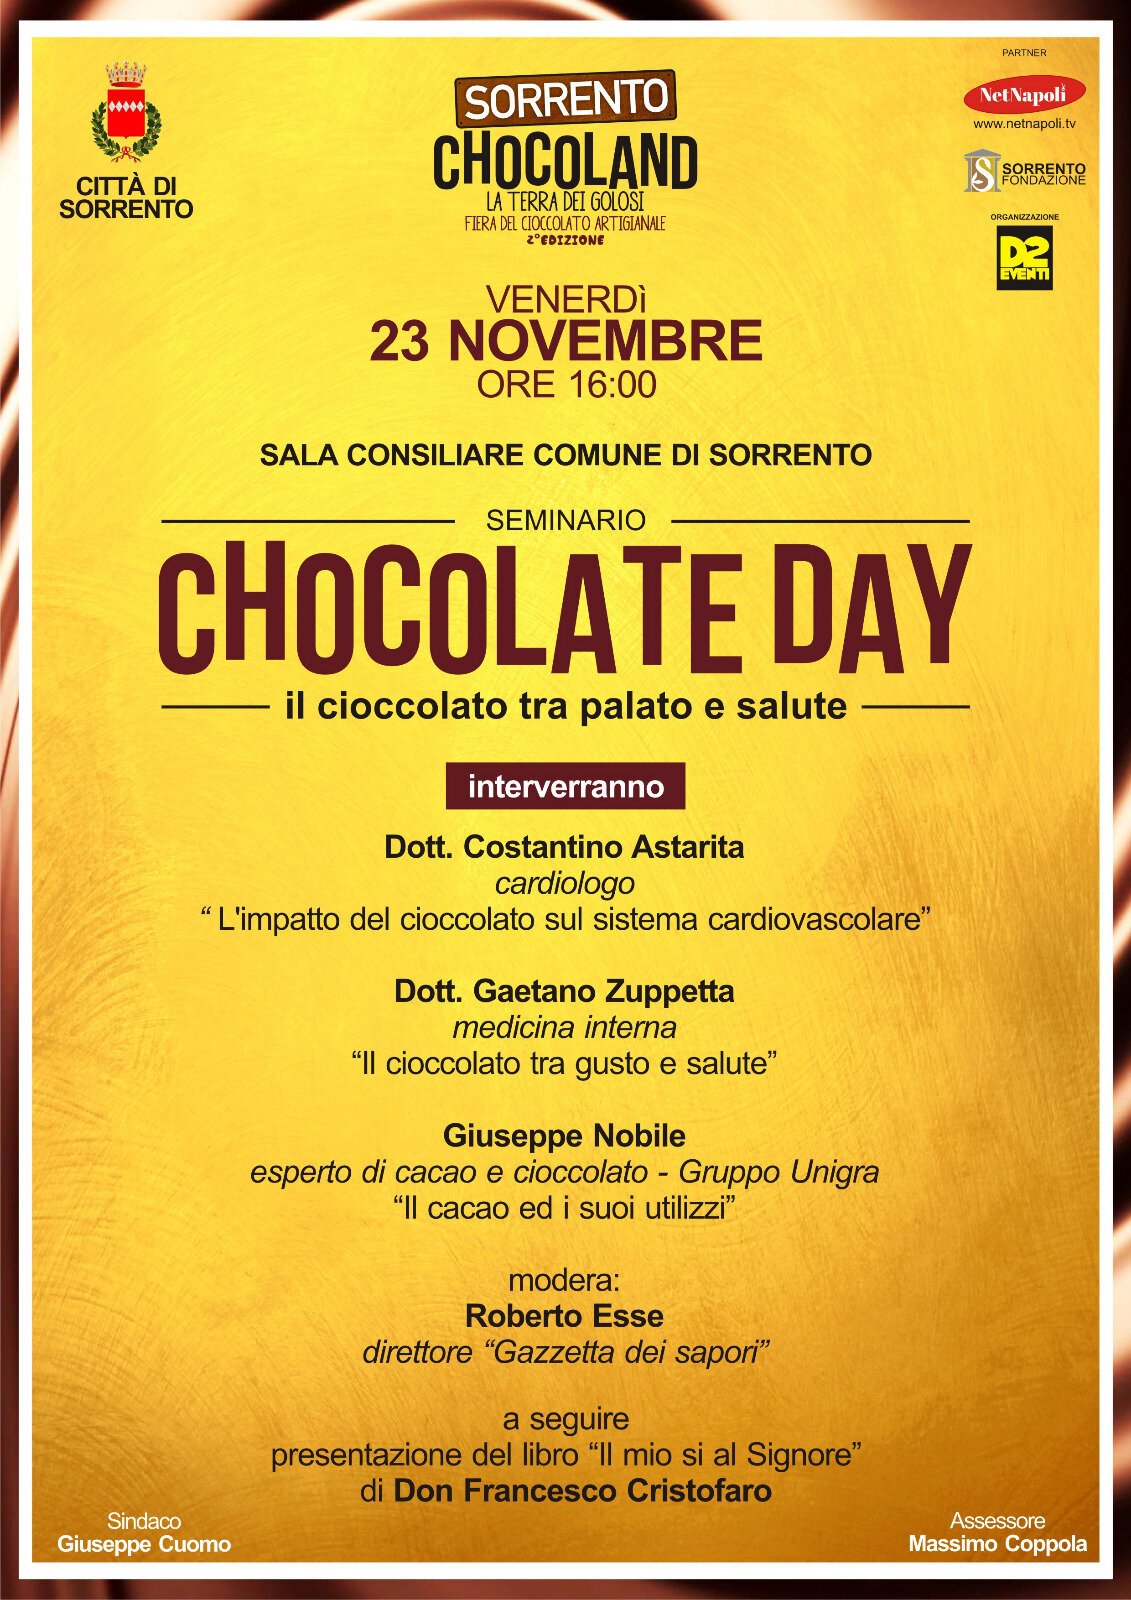 SORRENTO CHOCOLAND, la fiera del cioccolato artigianale dal 22 al 25 novembre